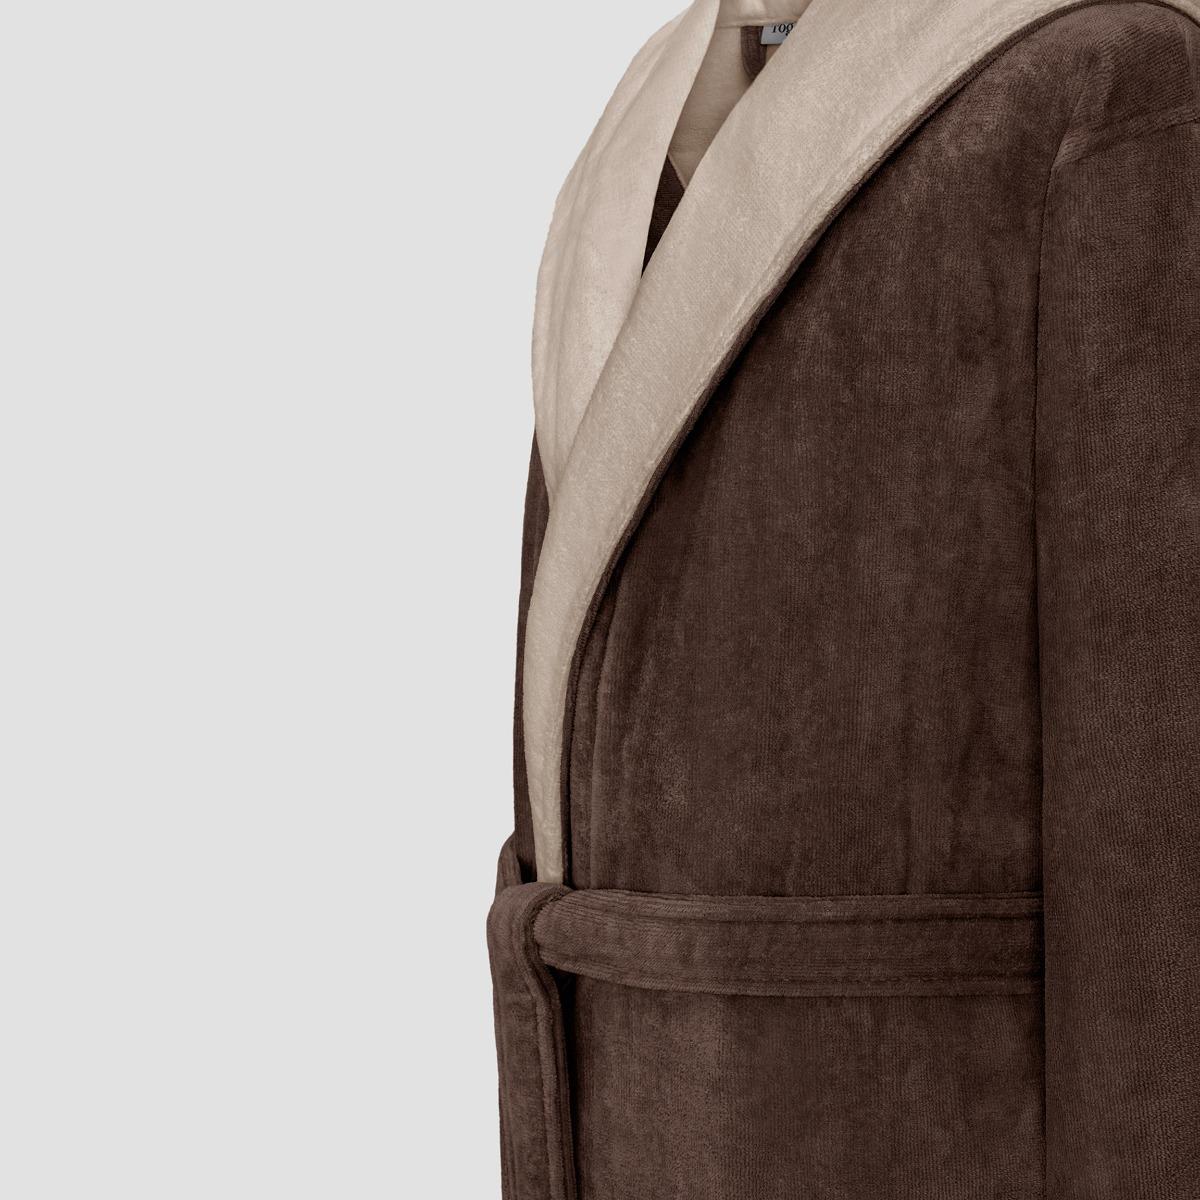 фото Халат togas арт лайн коричневый с бежевым l(50)